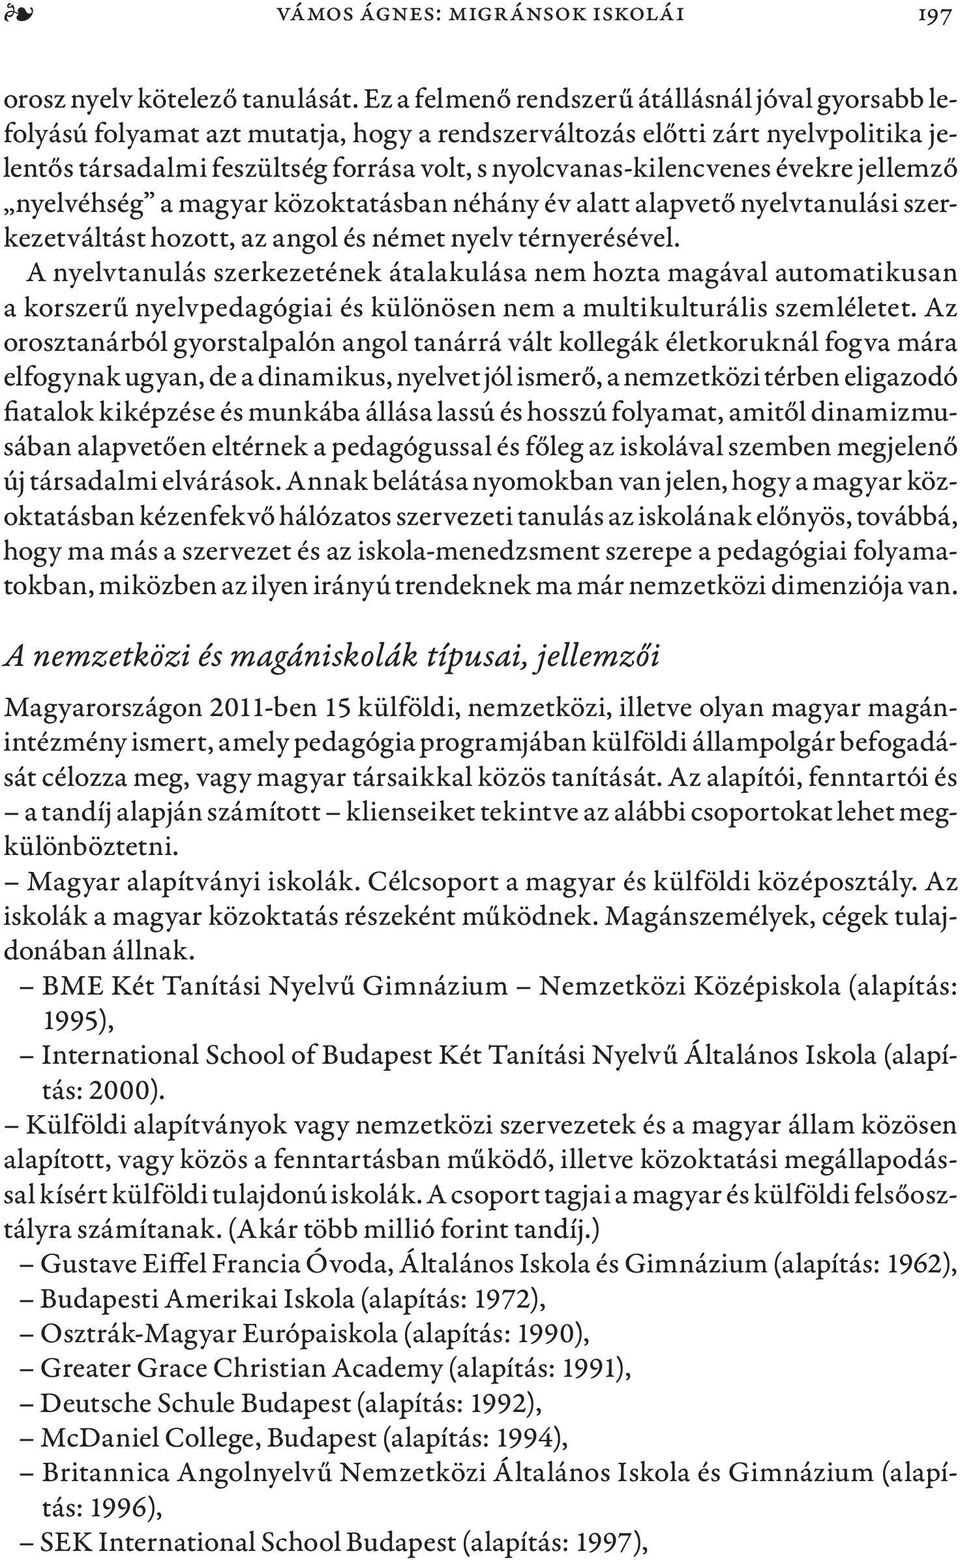 nyolcvanas-kilencvenes évekre jellemző nyelvéhség a magyar közoktatásban néhány év alatt alapvető nyelvtanulási szerkezetváltást hozott, az angol és német nyelv térnyerésével.